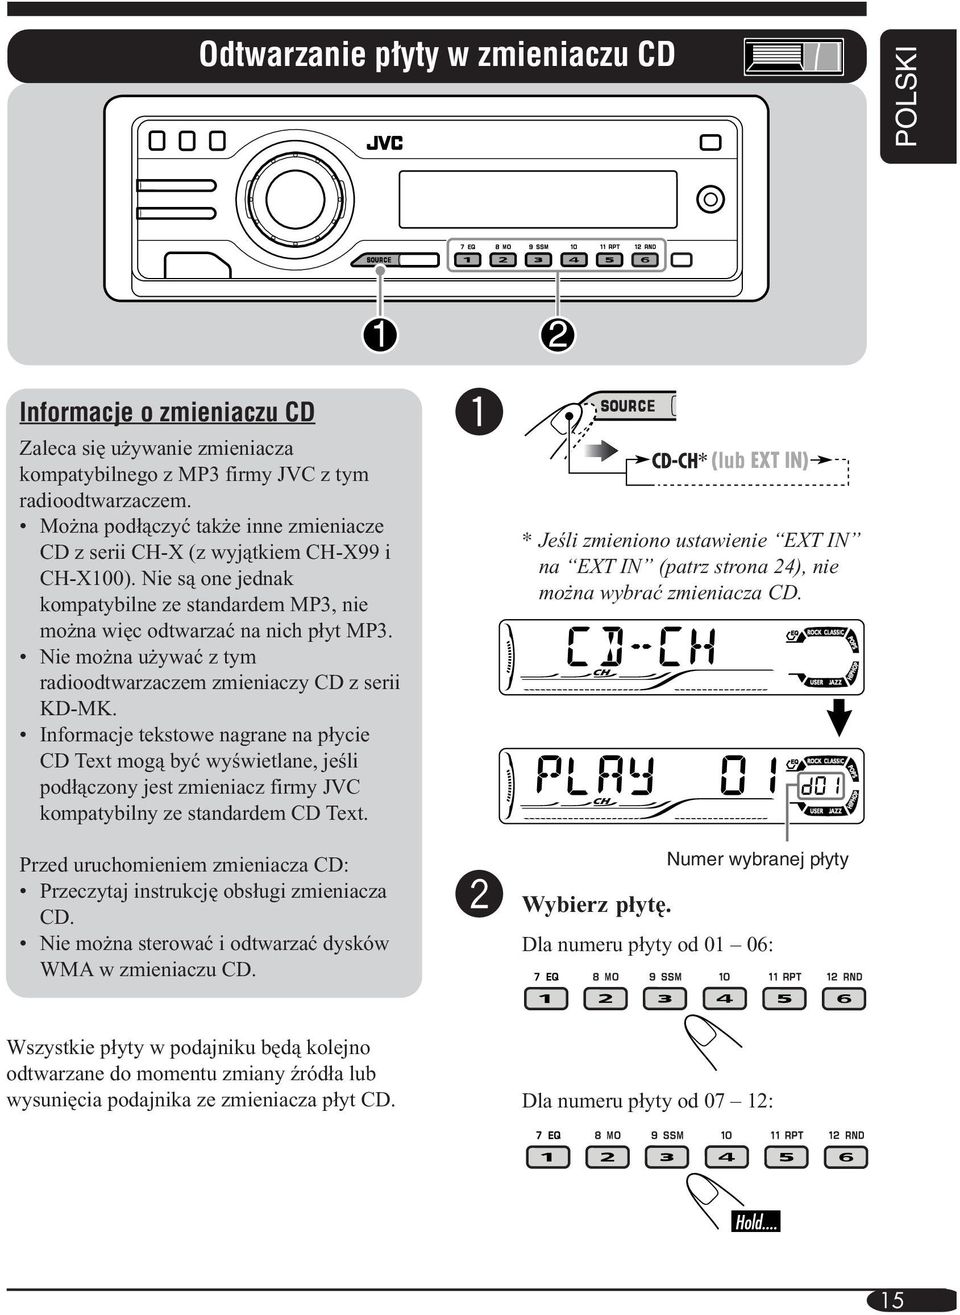 Nie można używać z tym radioodtwarzaczem zmieniaczy CD z serii KD-MK.